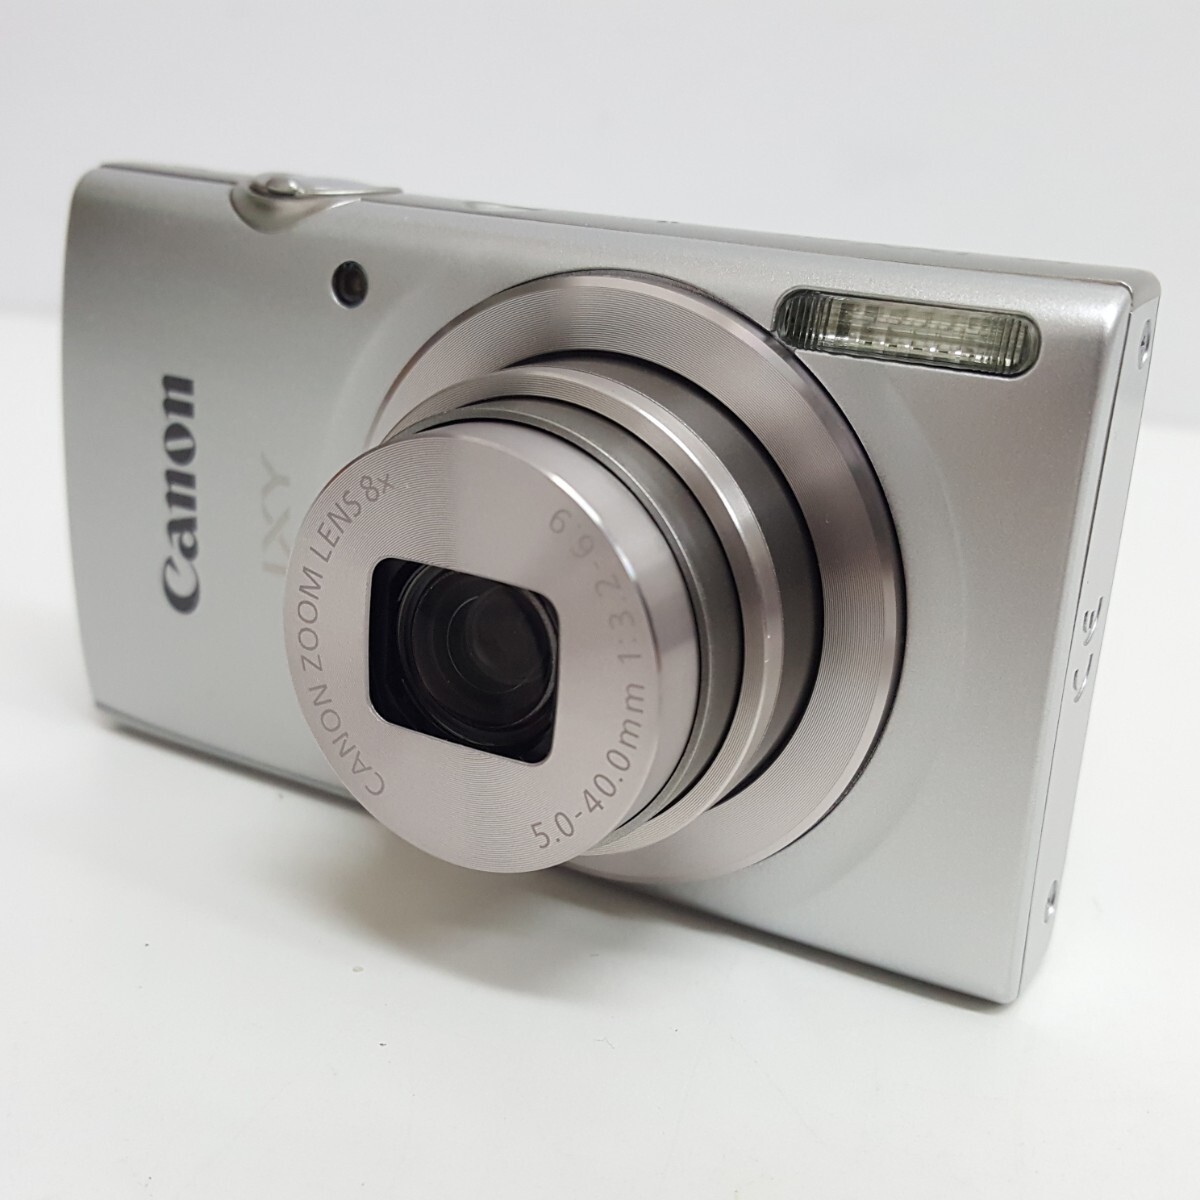 【 IXY200 】Canon キヤノン デジタルカメラ IXY 200 シルバー_画像3